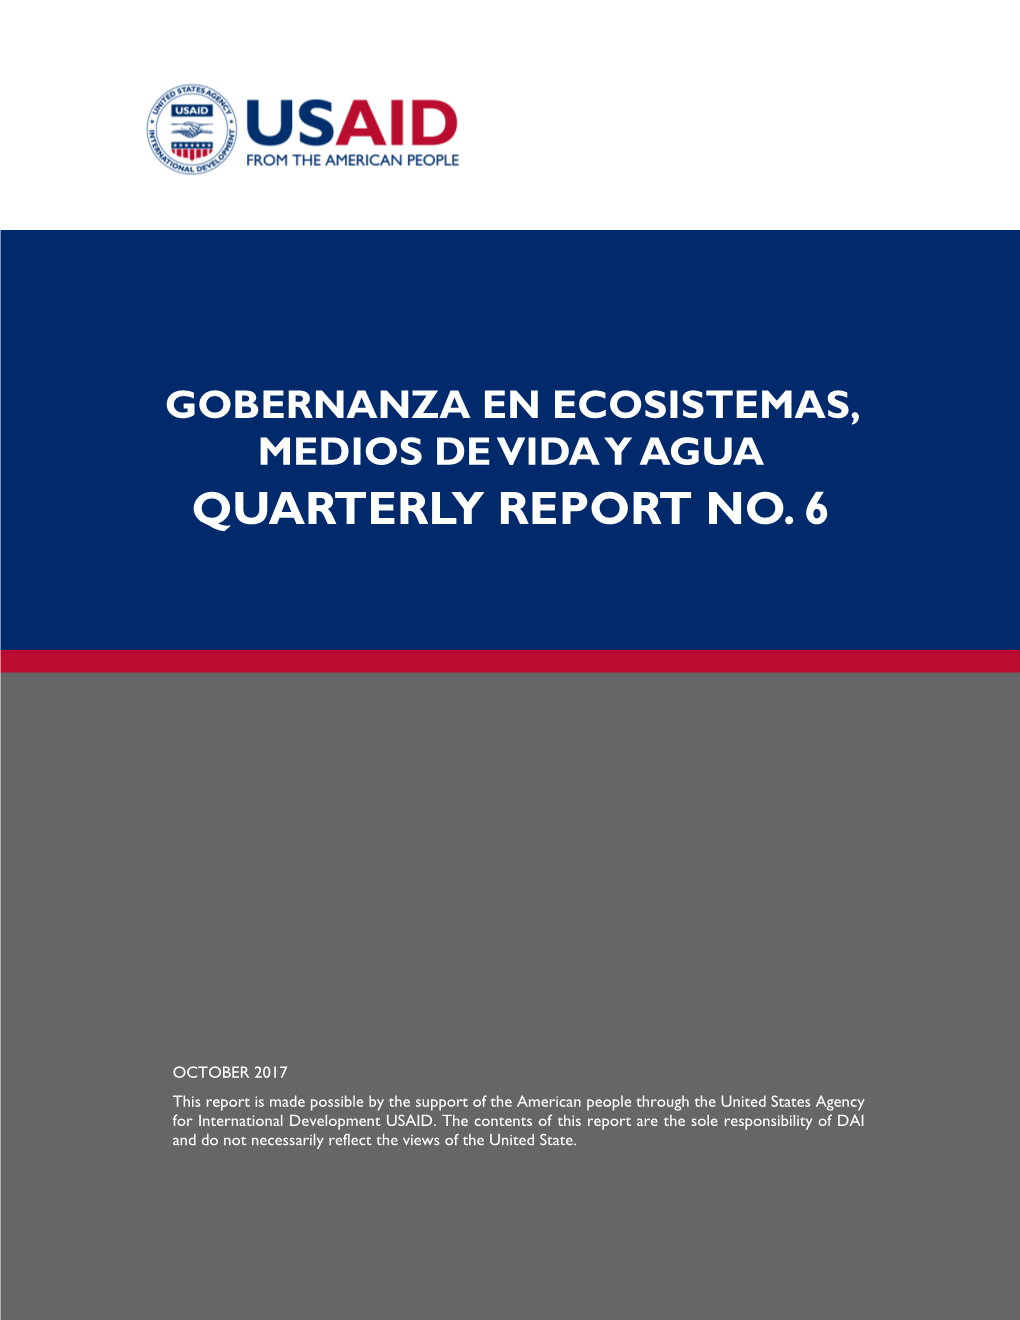 Quarterly Report No. 6